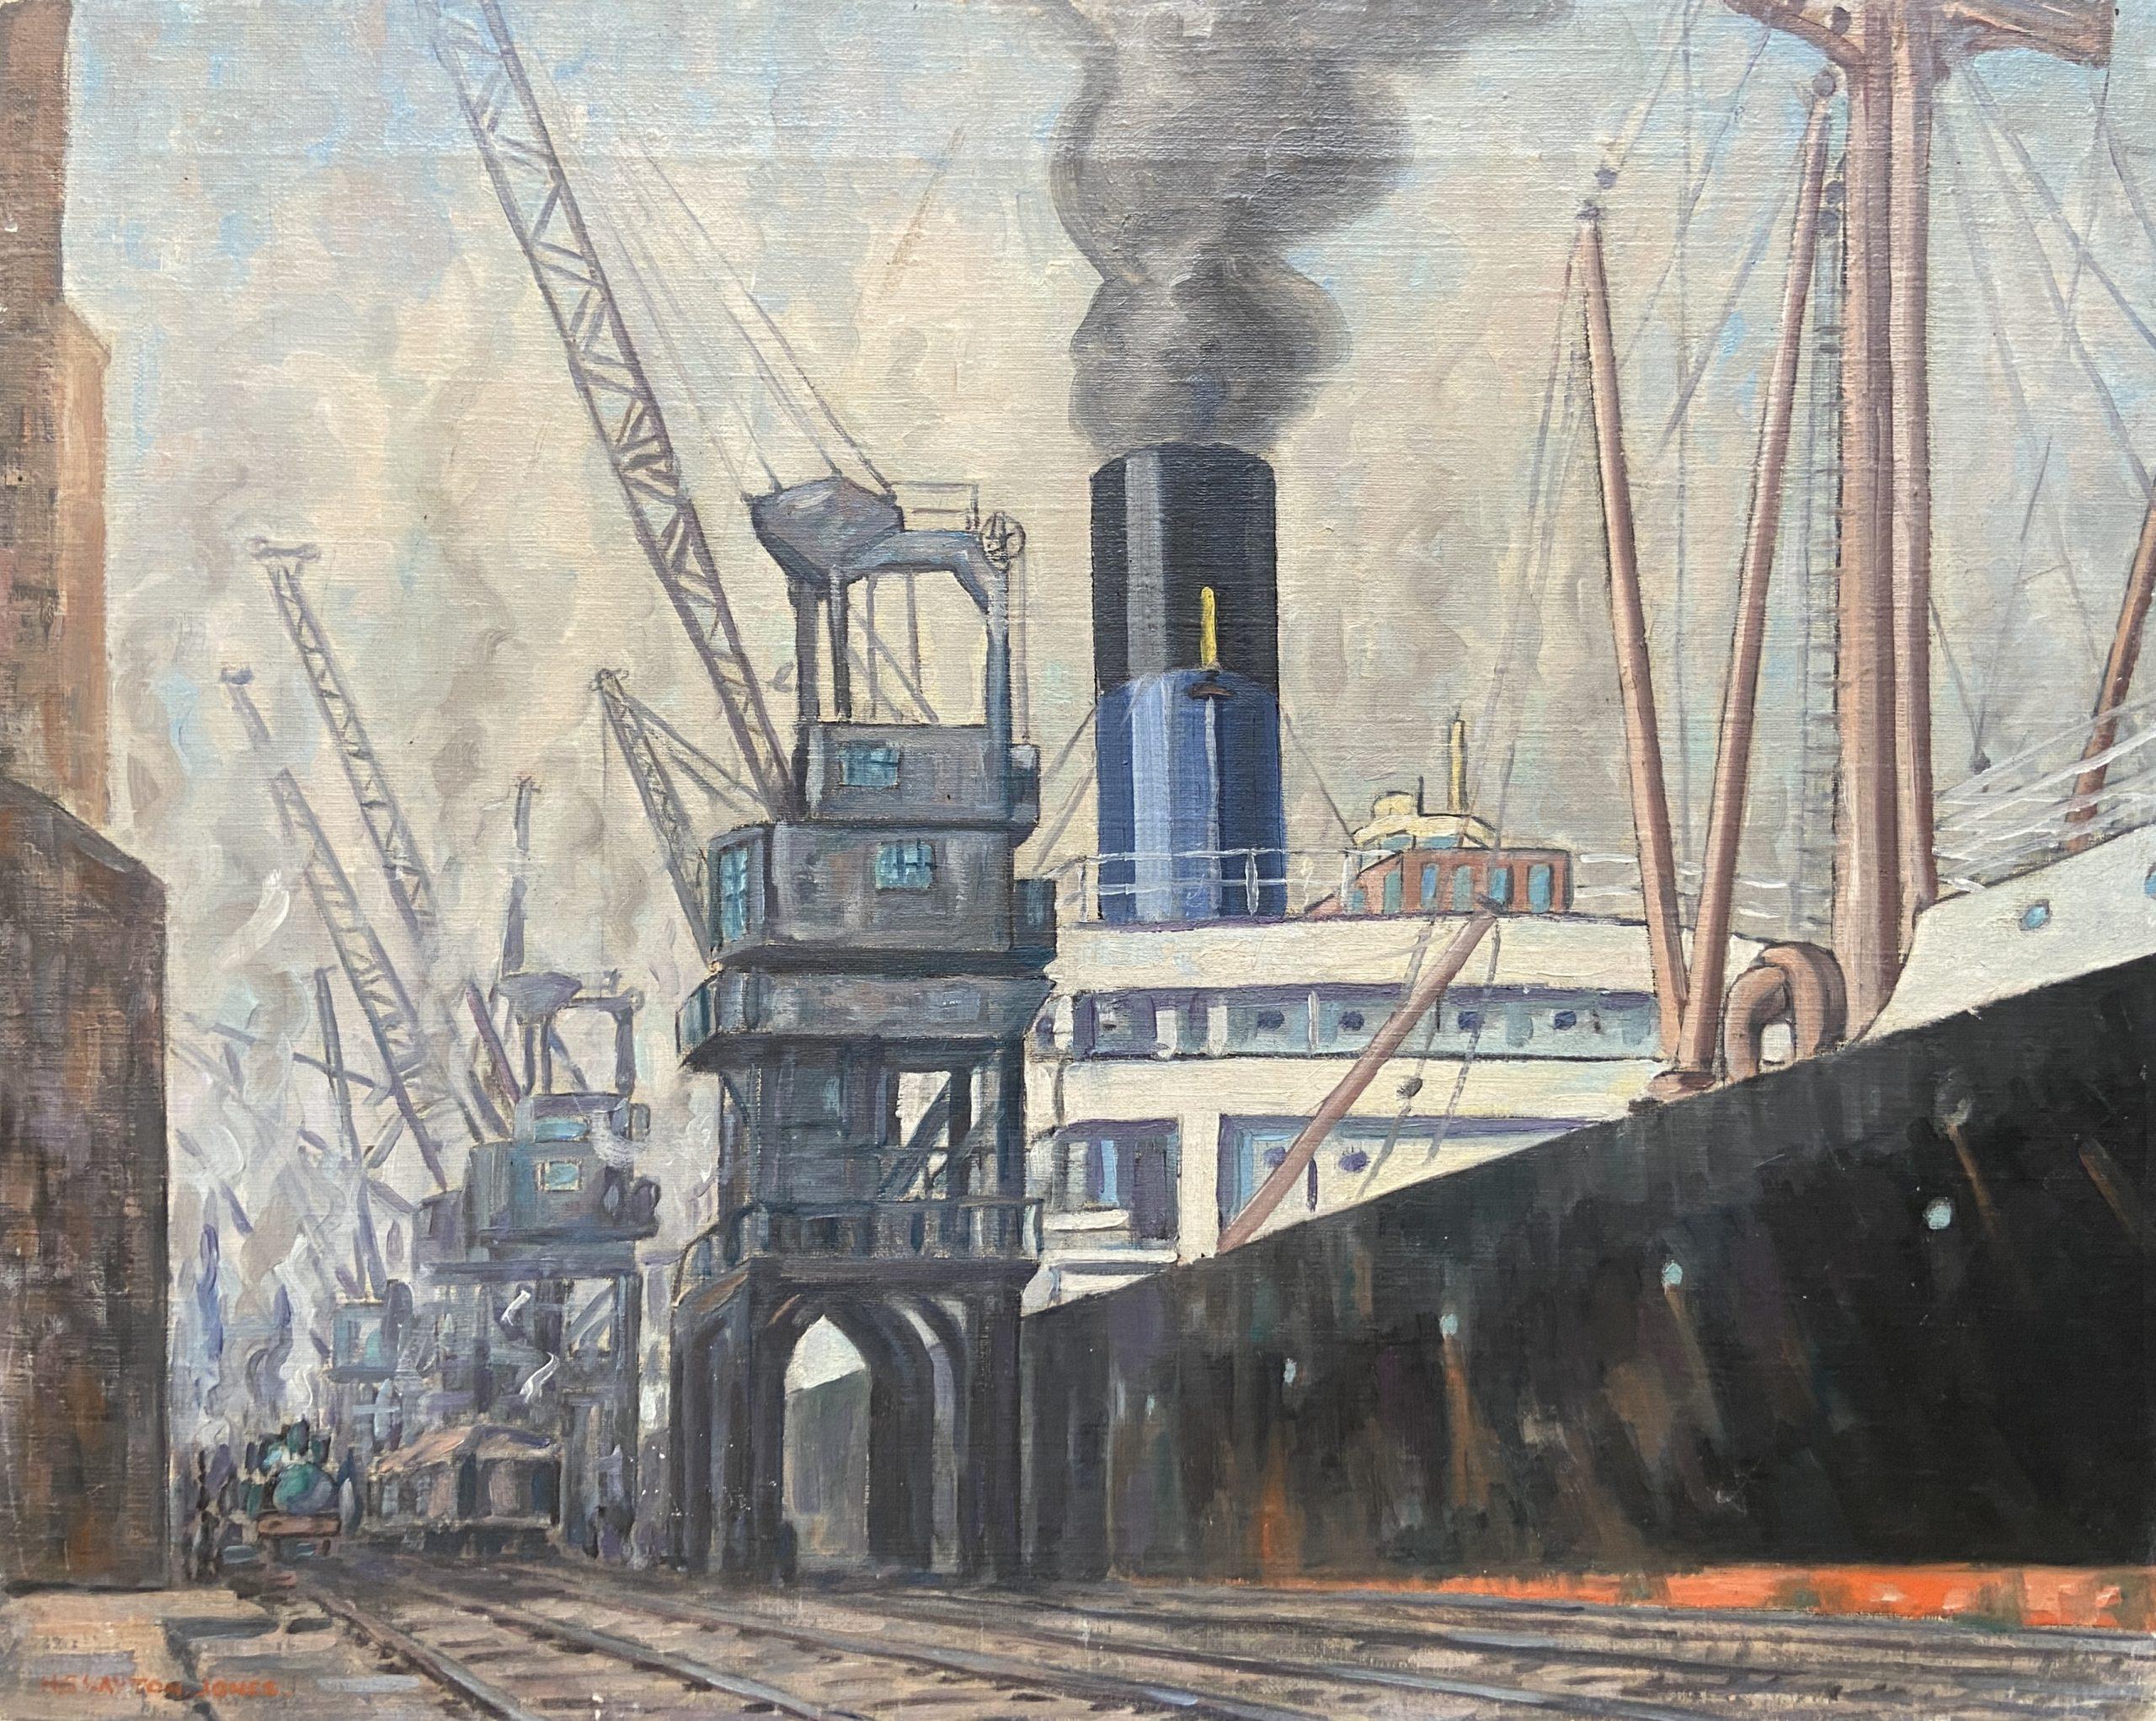 Landscape Painting Howell Clayton Jones - Cardiff Docks, peinture à l'huile galloise du 20e siècle, scène industrielle